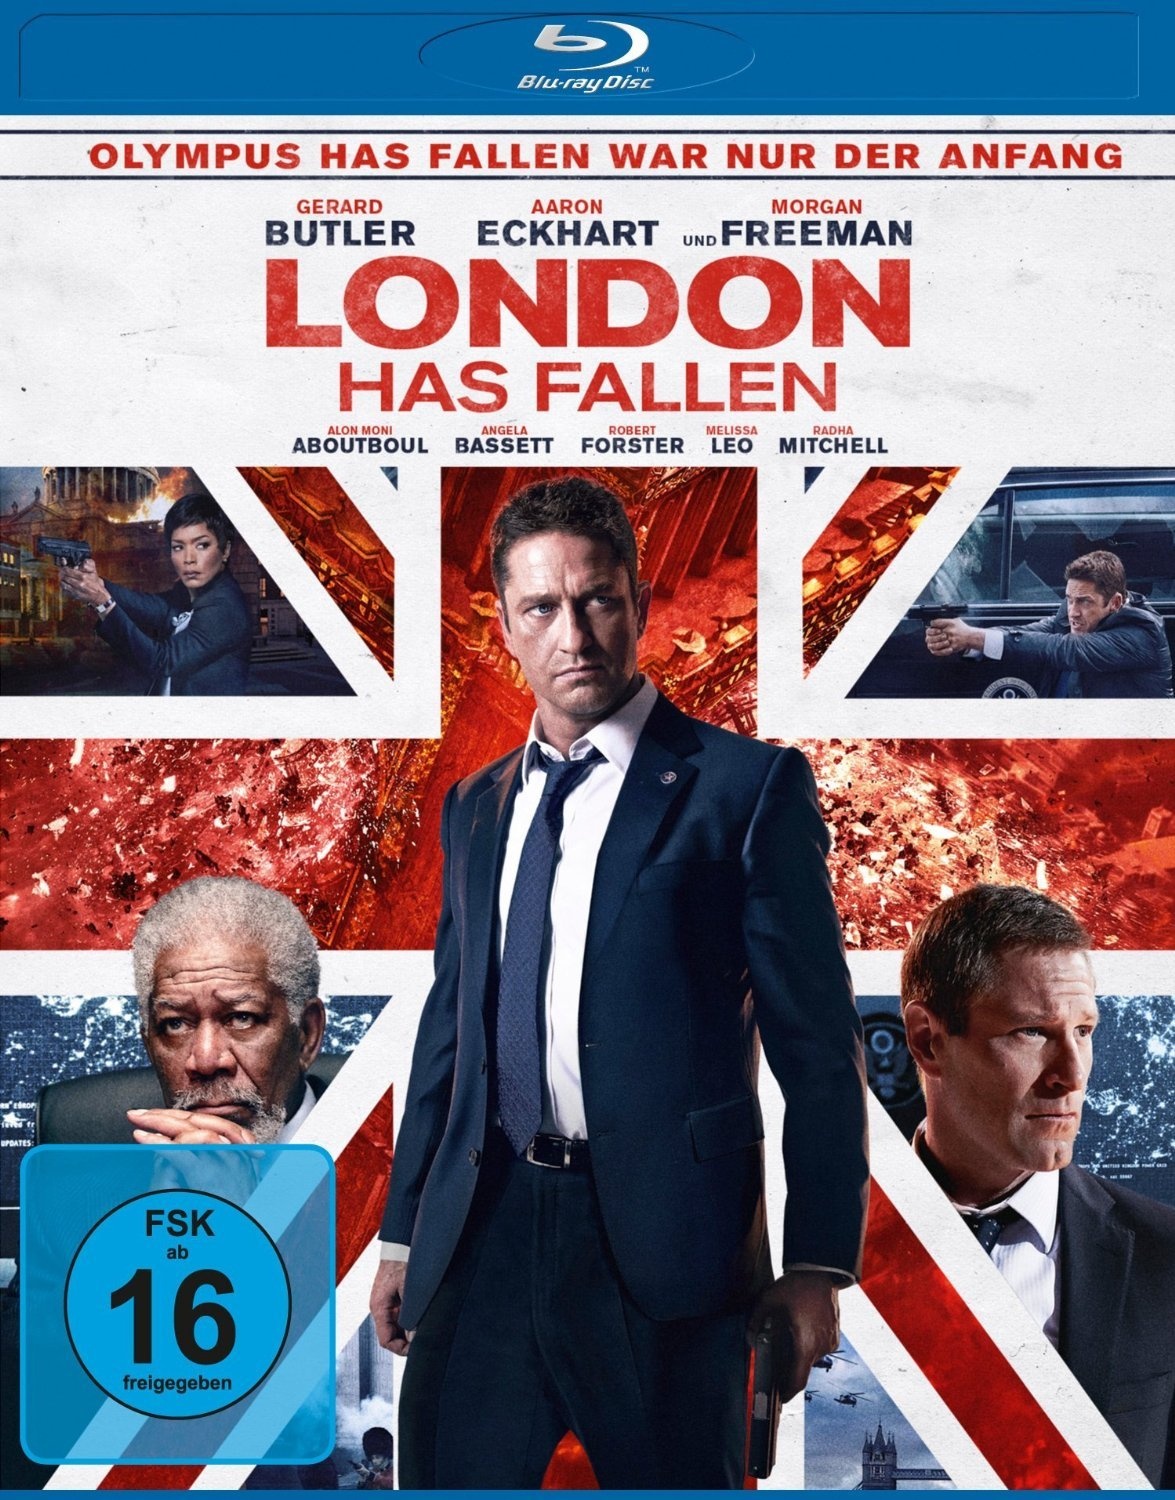 London Has Fallen (Blu-ray)